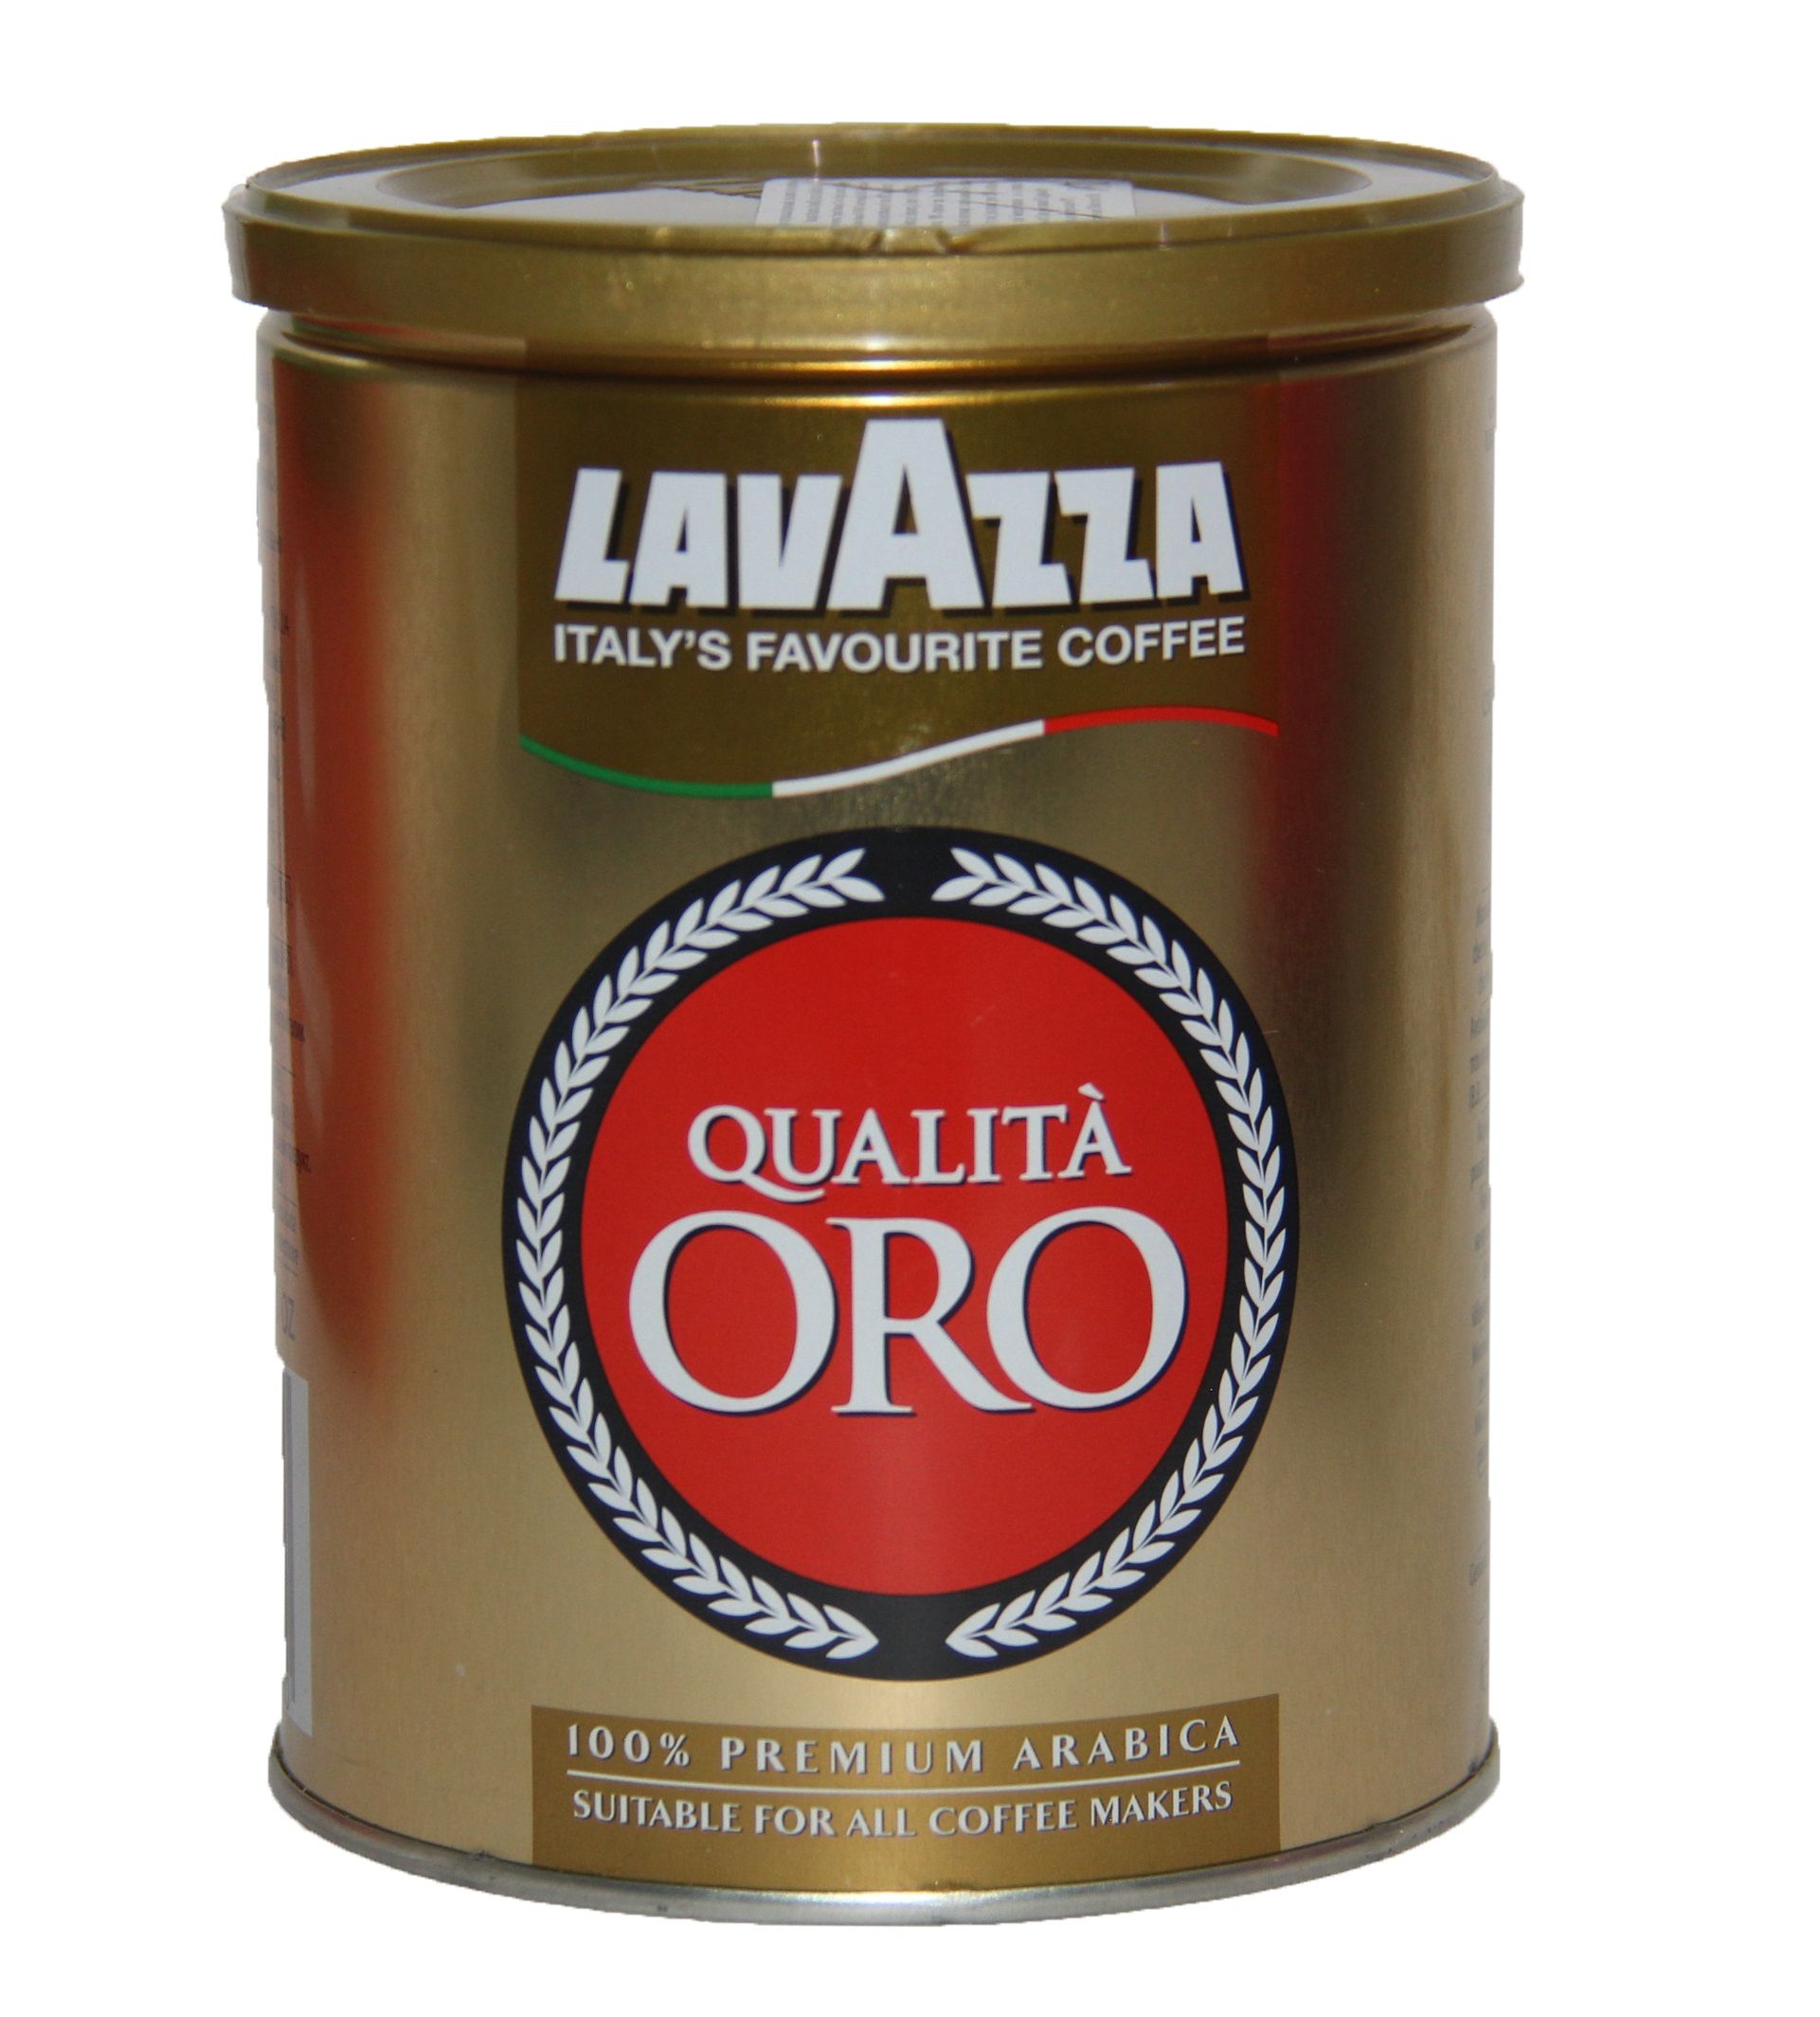 Банка кофе цена. Кофе молотый Lavazza qualita Oro жестяная банка. Кофе Лавацца Оро в банке. Кофе Лавацца жестяная банка. Кофе Lavazza Oro растворимый.